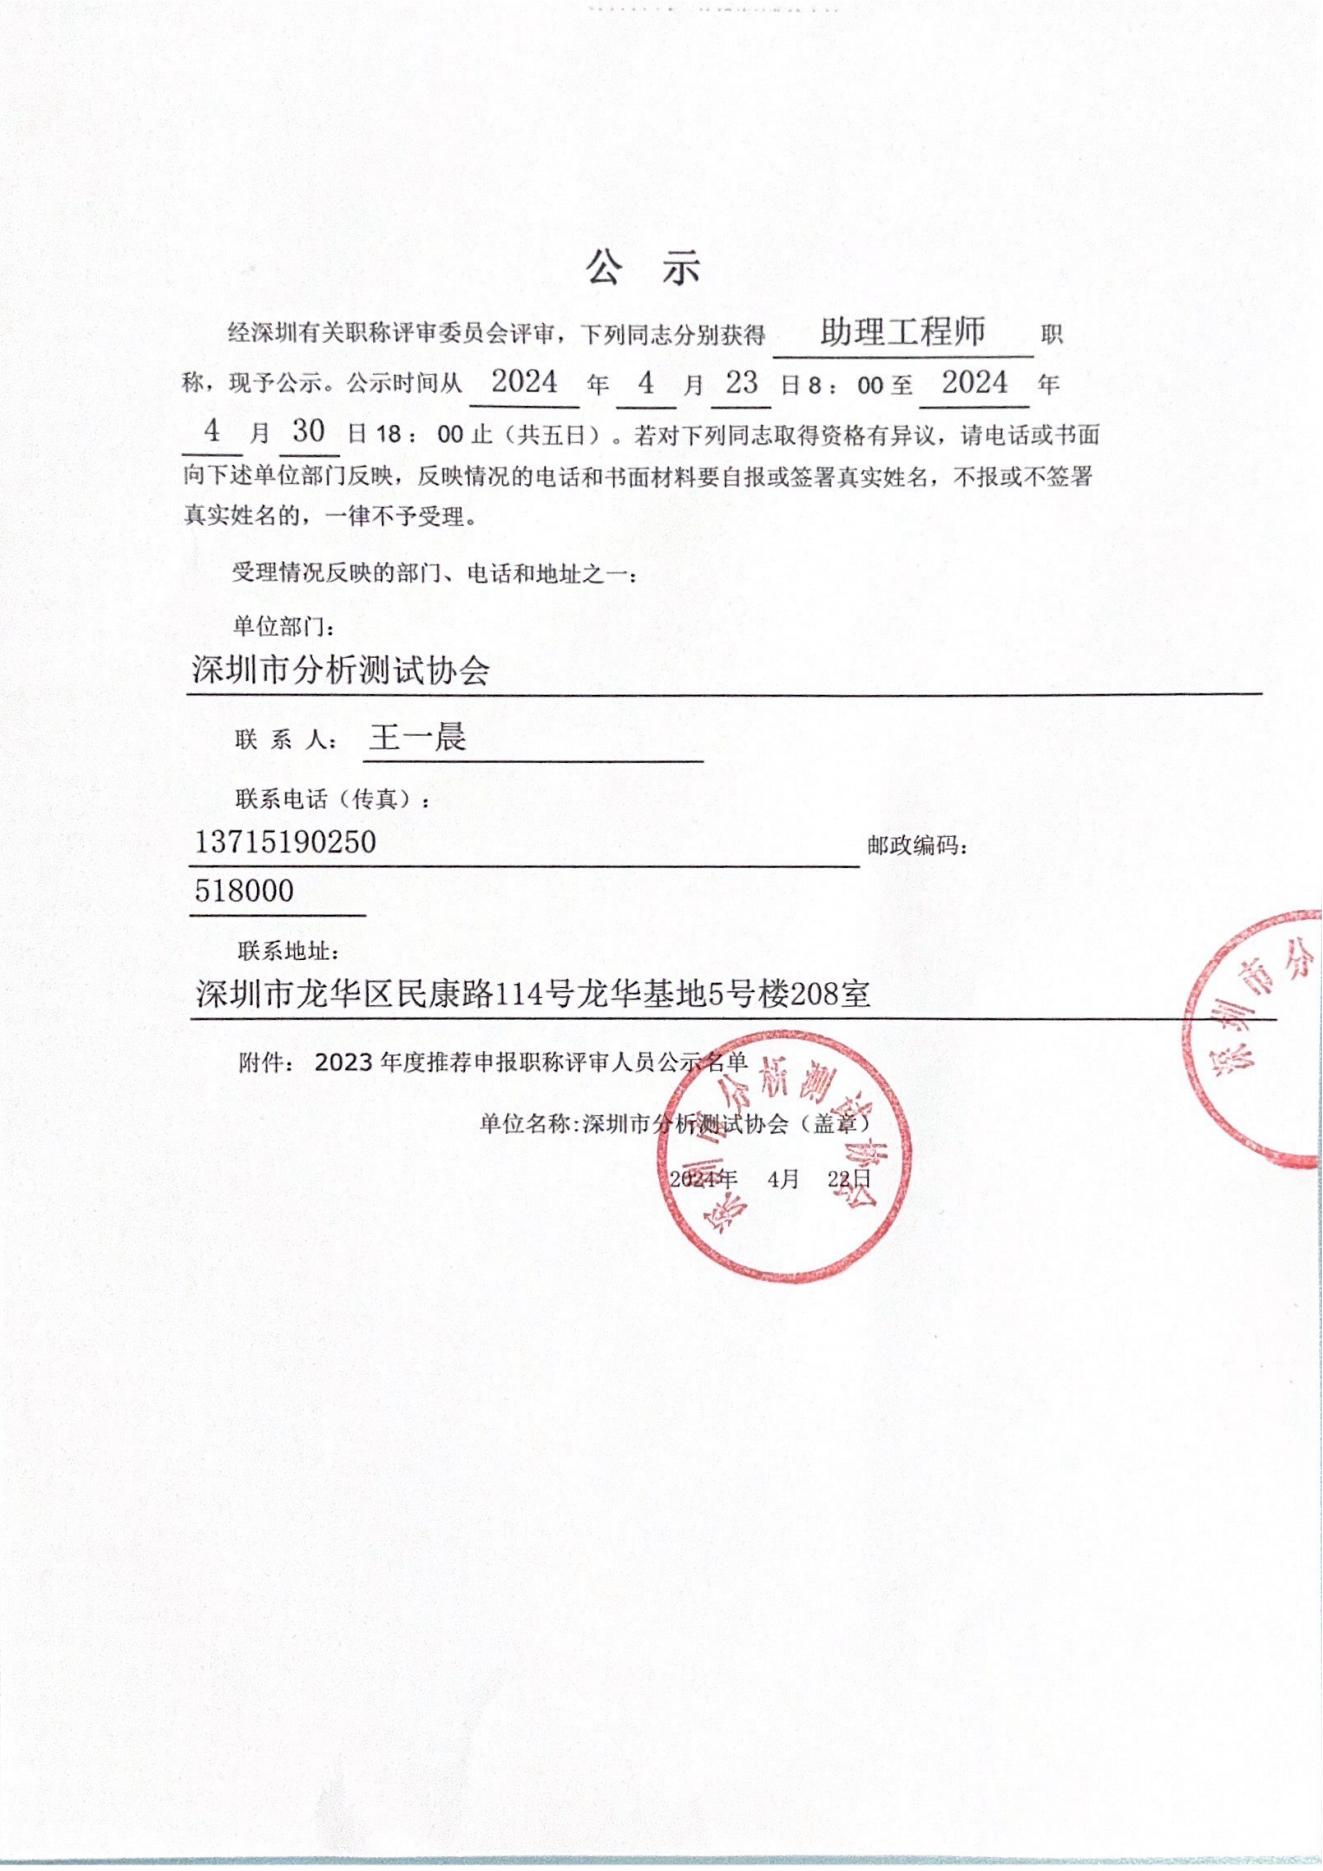 2023年度深圳市分析测试协会职称评后公示